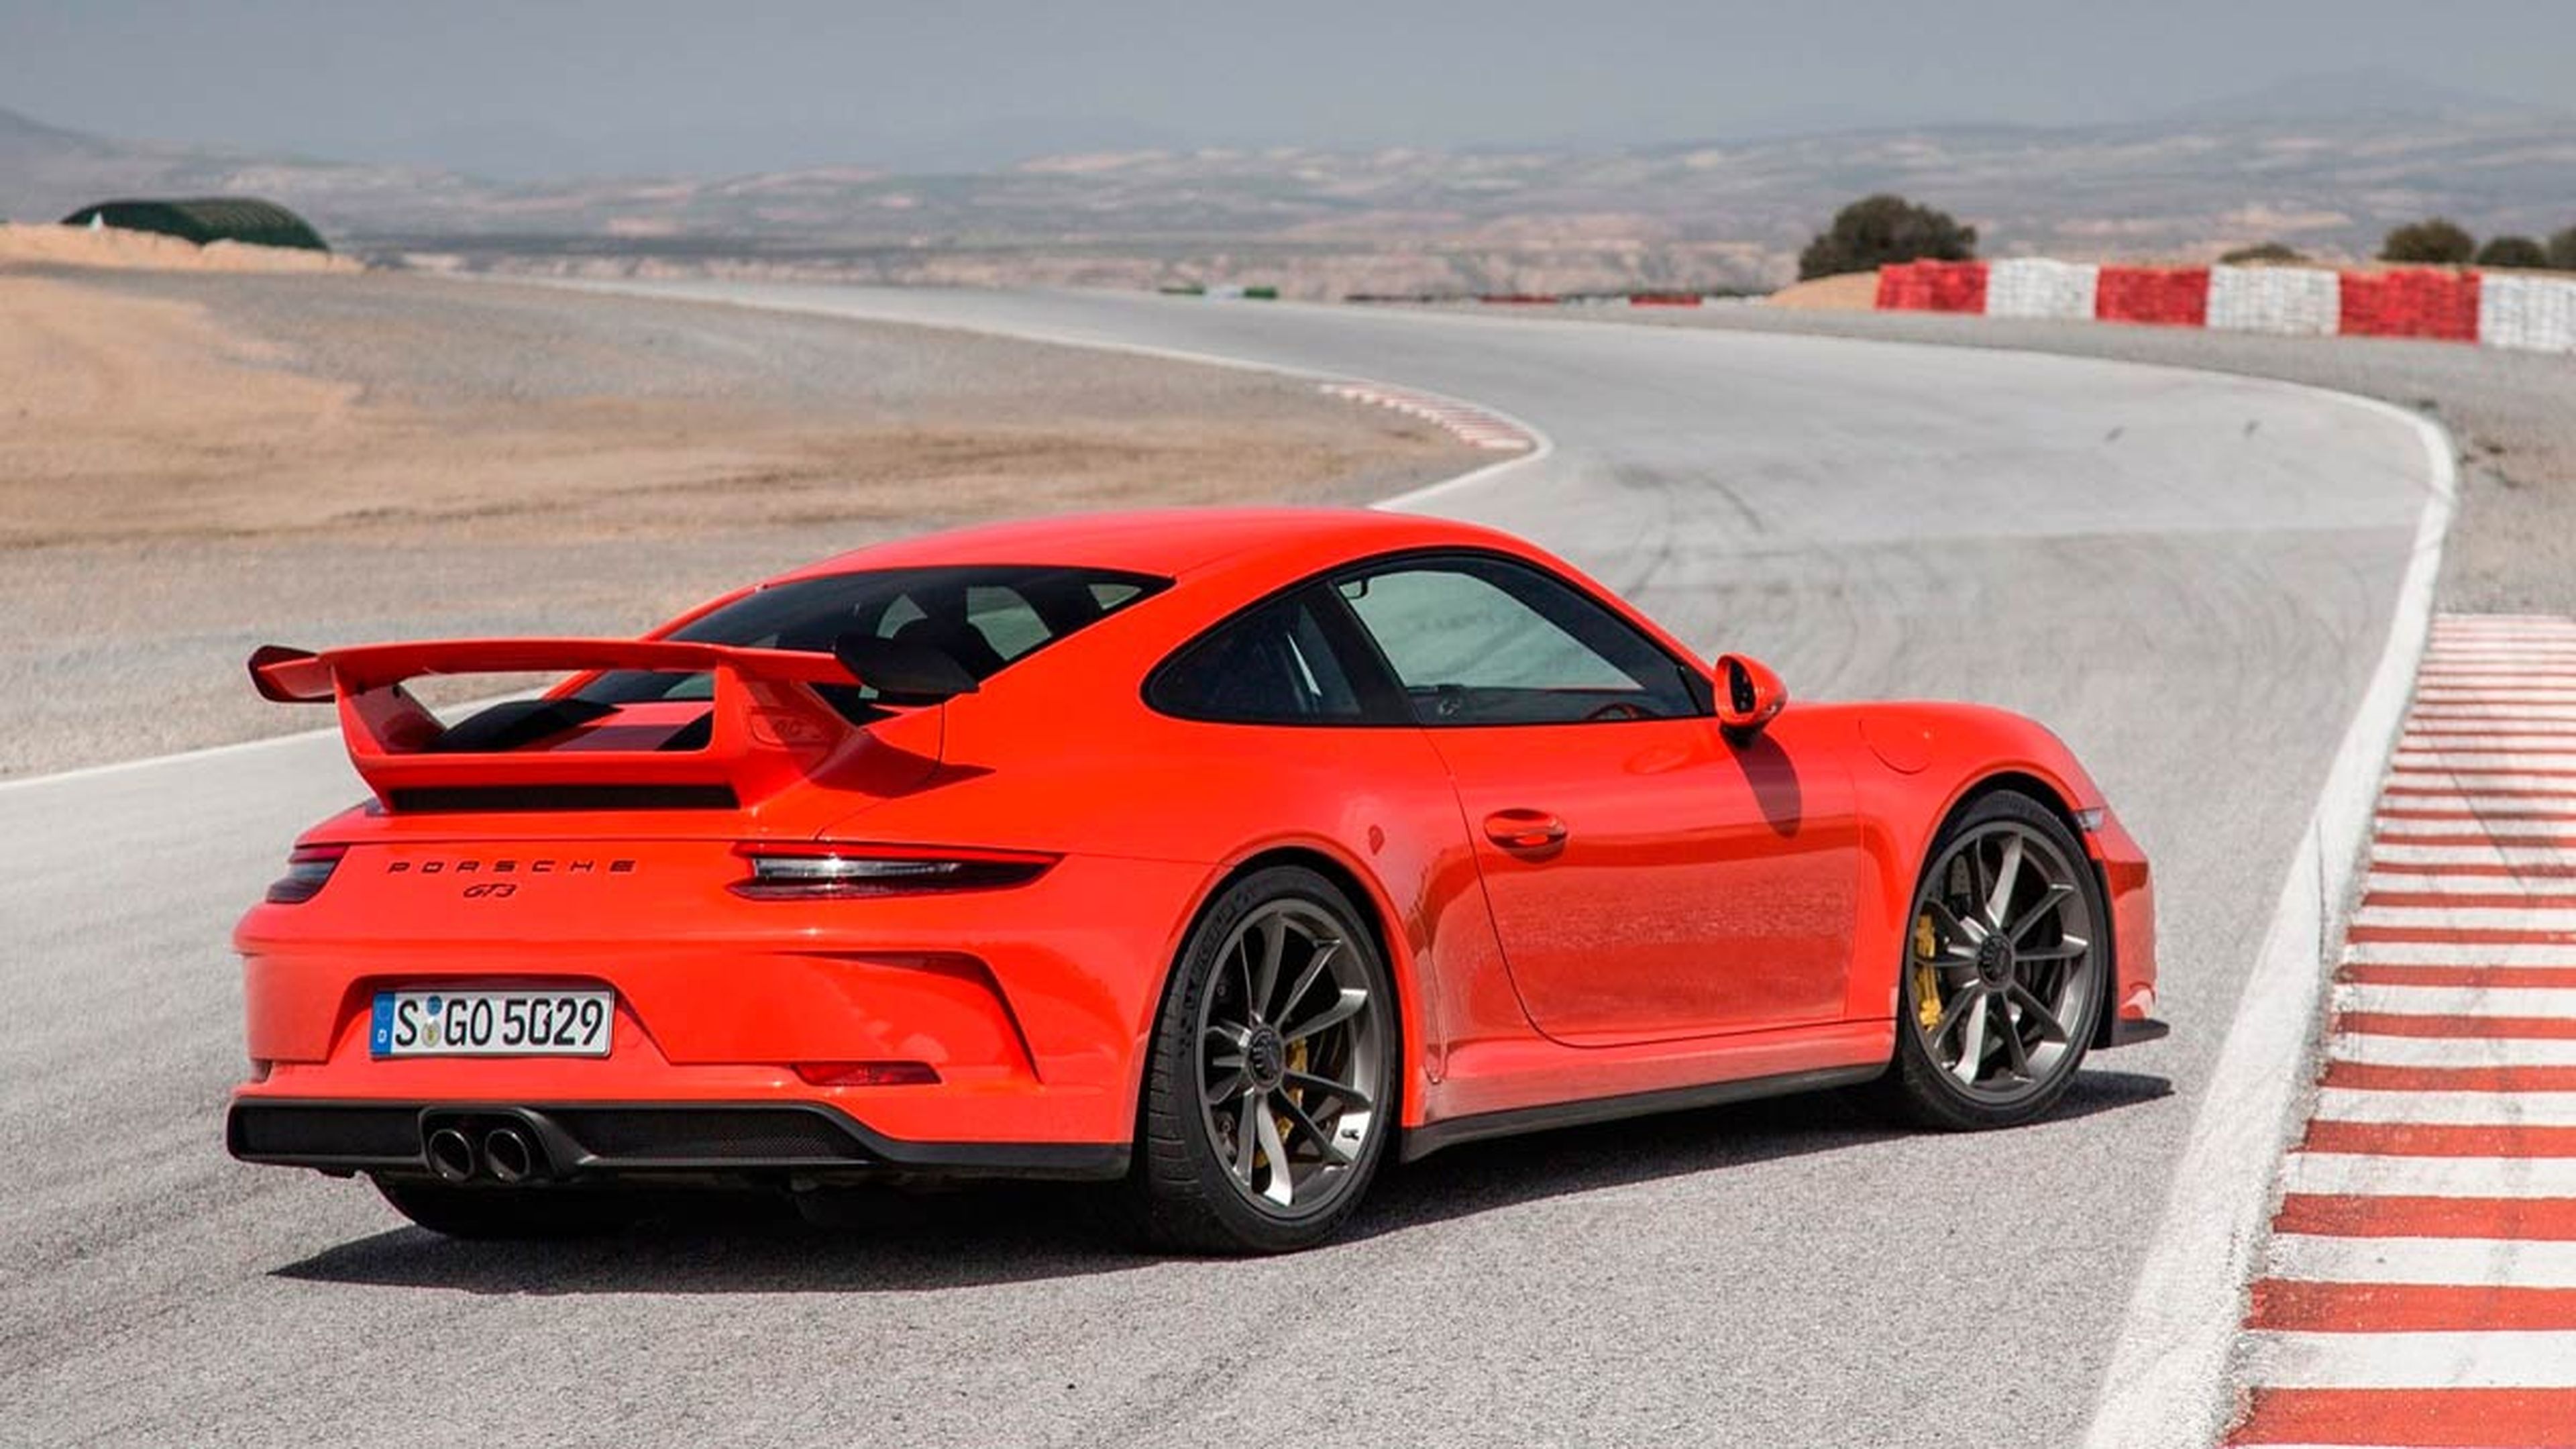 motores atmosféricos que giran más arriba: Porsche 911 GT3